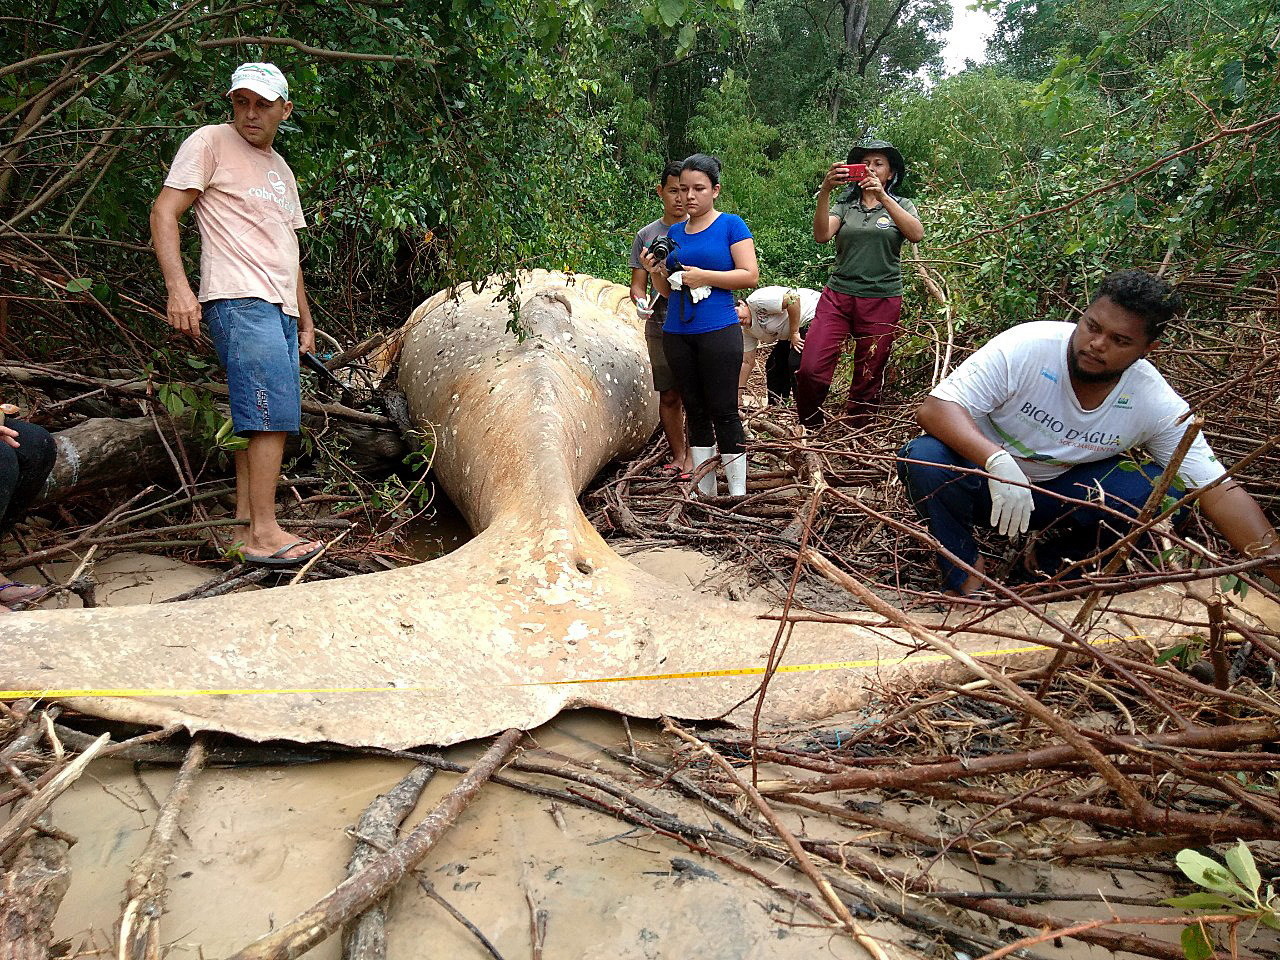 Humbak został znaleziony martwy w bagnie na brazylijskiej wyspie Marajo, położonej w Amazonii. Ostatnio w tym regionie był bardzo silny przypływ, który mógł wpłynąć na los wieloryba, fot. EPA, NGO Instituto Bicho D'Agua